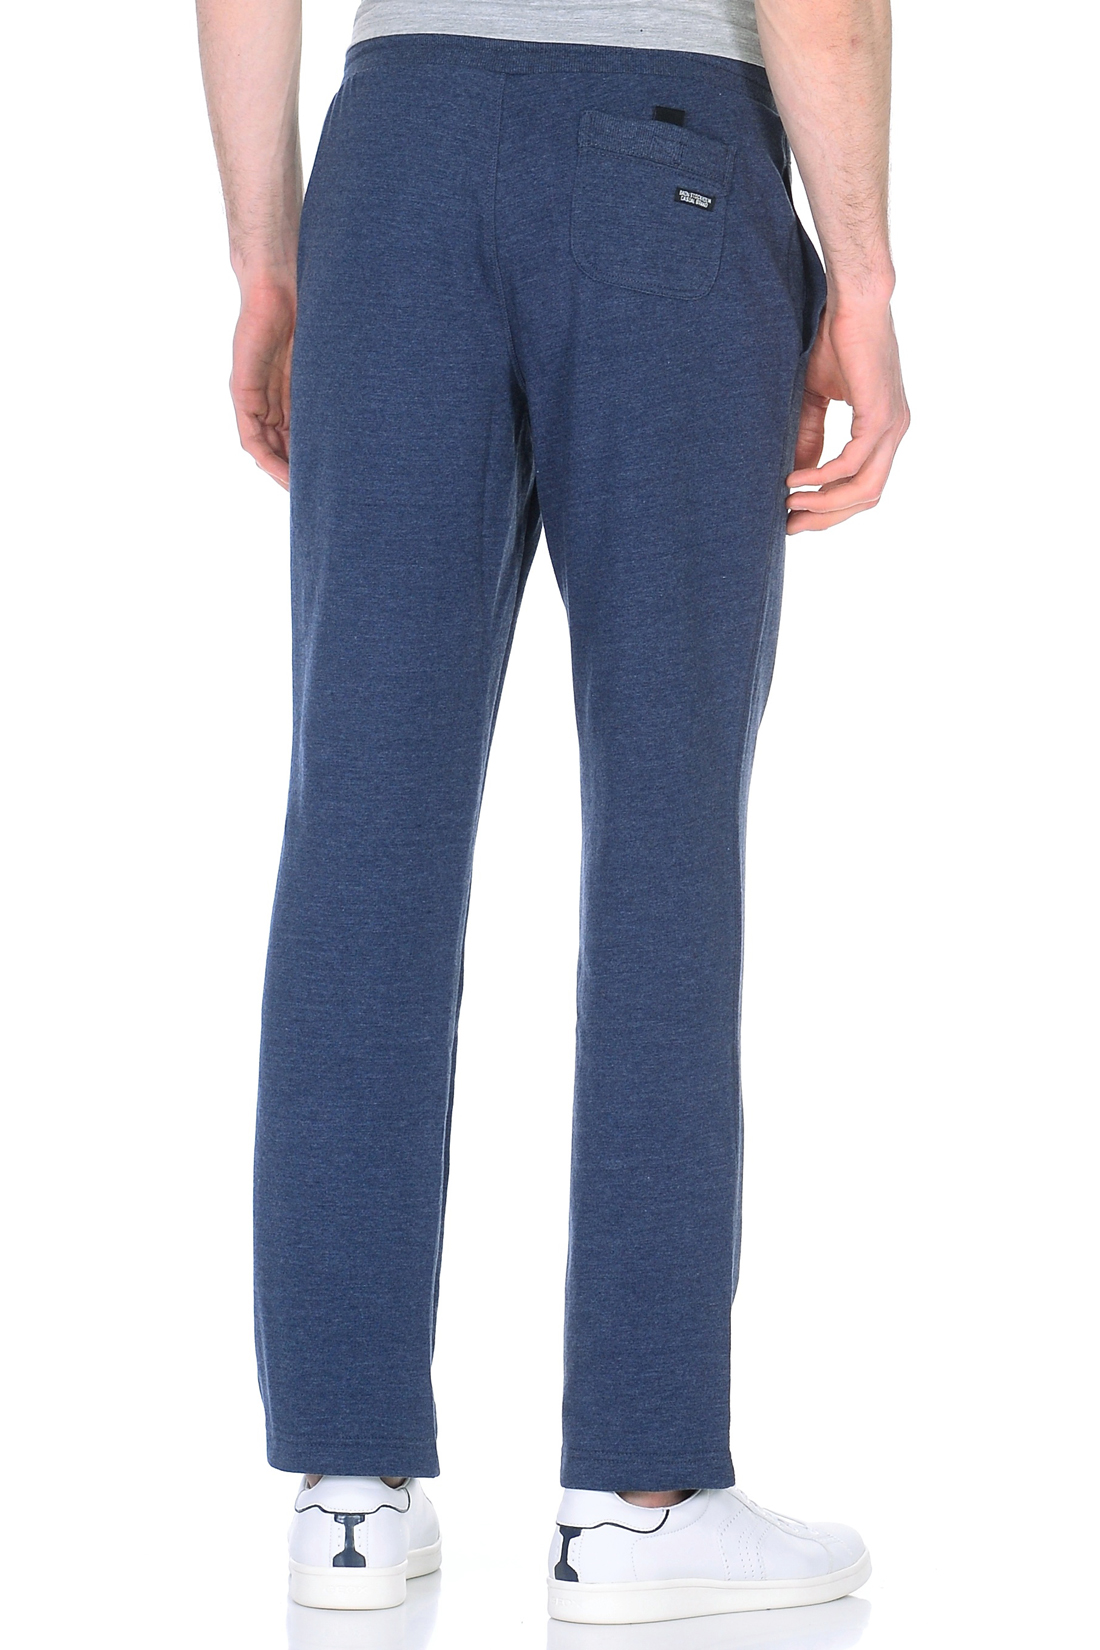 Спортивные брюки (арт. baon B798019), размер XXL, цвет blue night melange#синий Спортивные брюки (арт. baon B798019) - фото 2